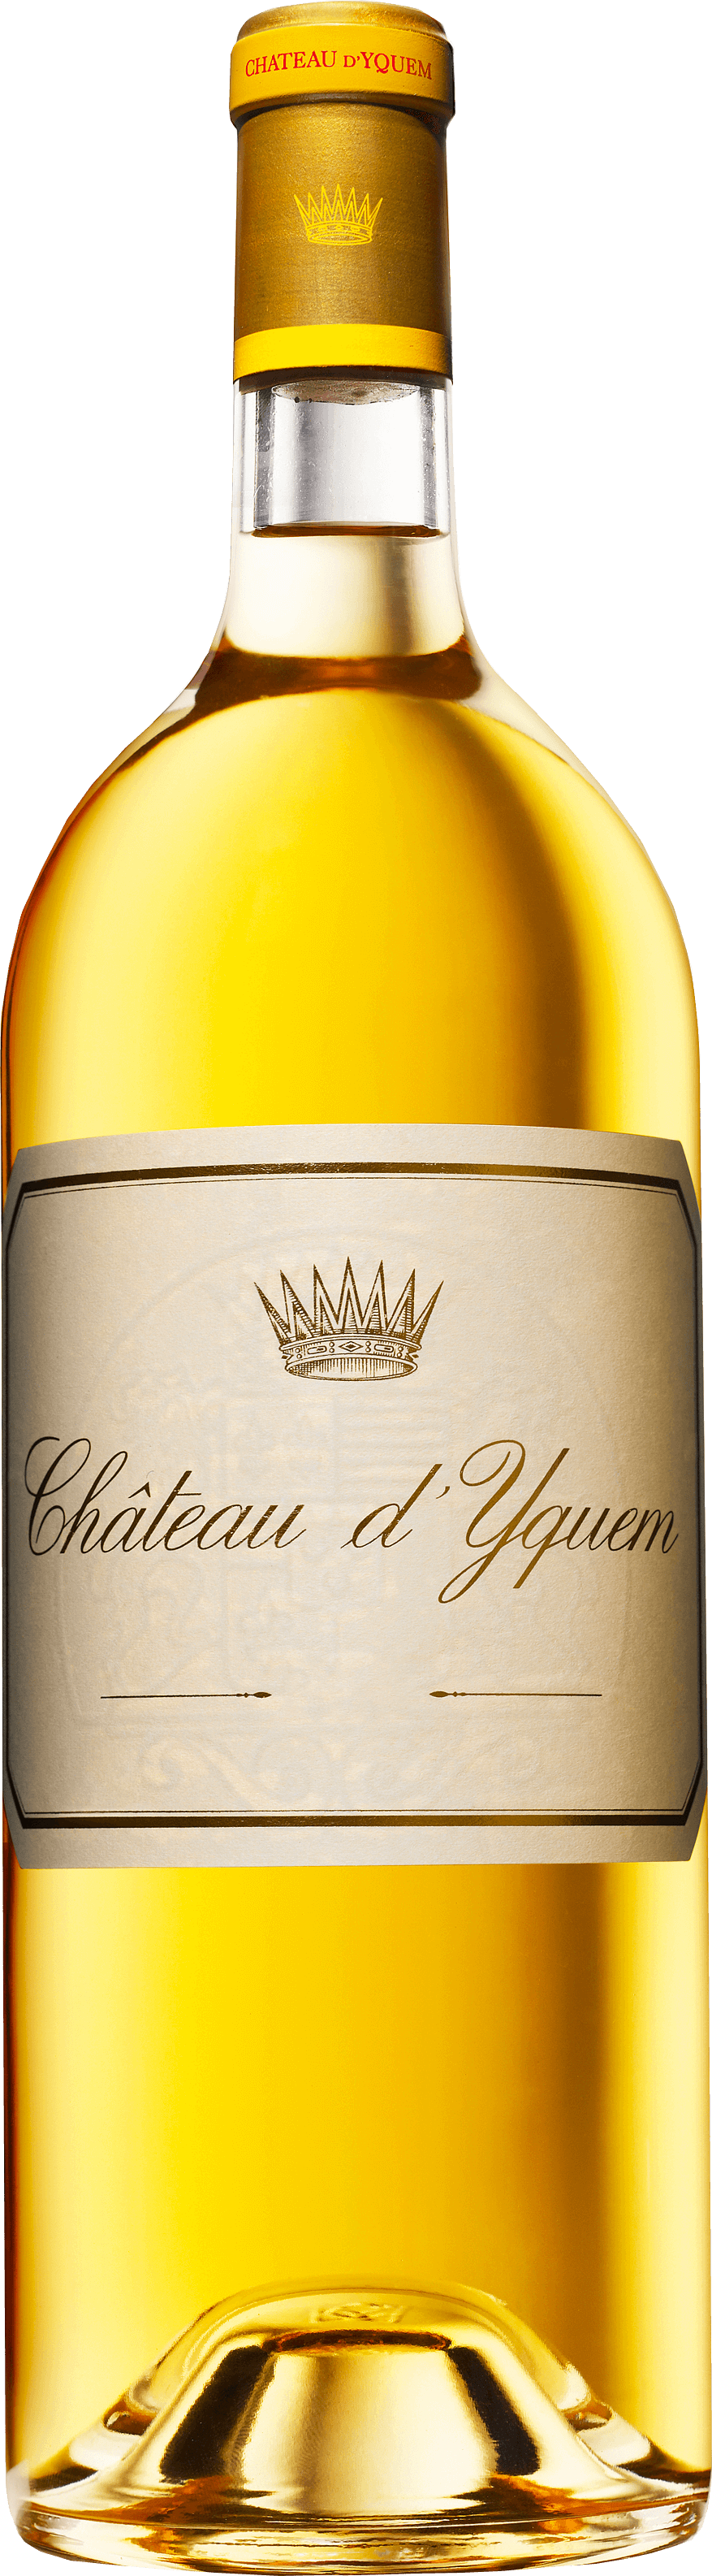 Yquem 2016 1er Cru Suprieur Sauternes, Bordeaux blanc